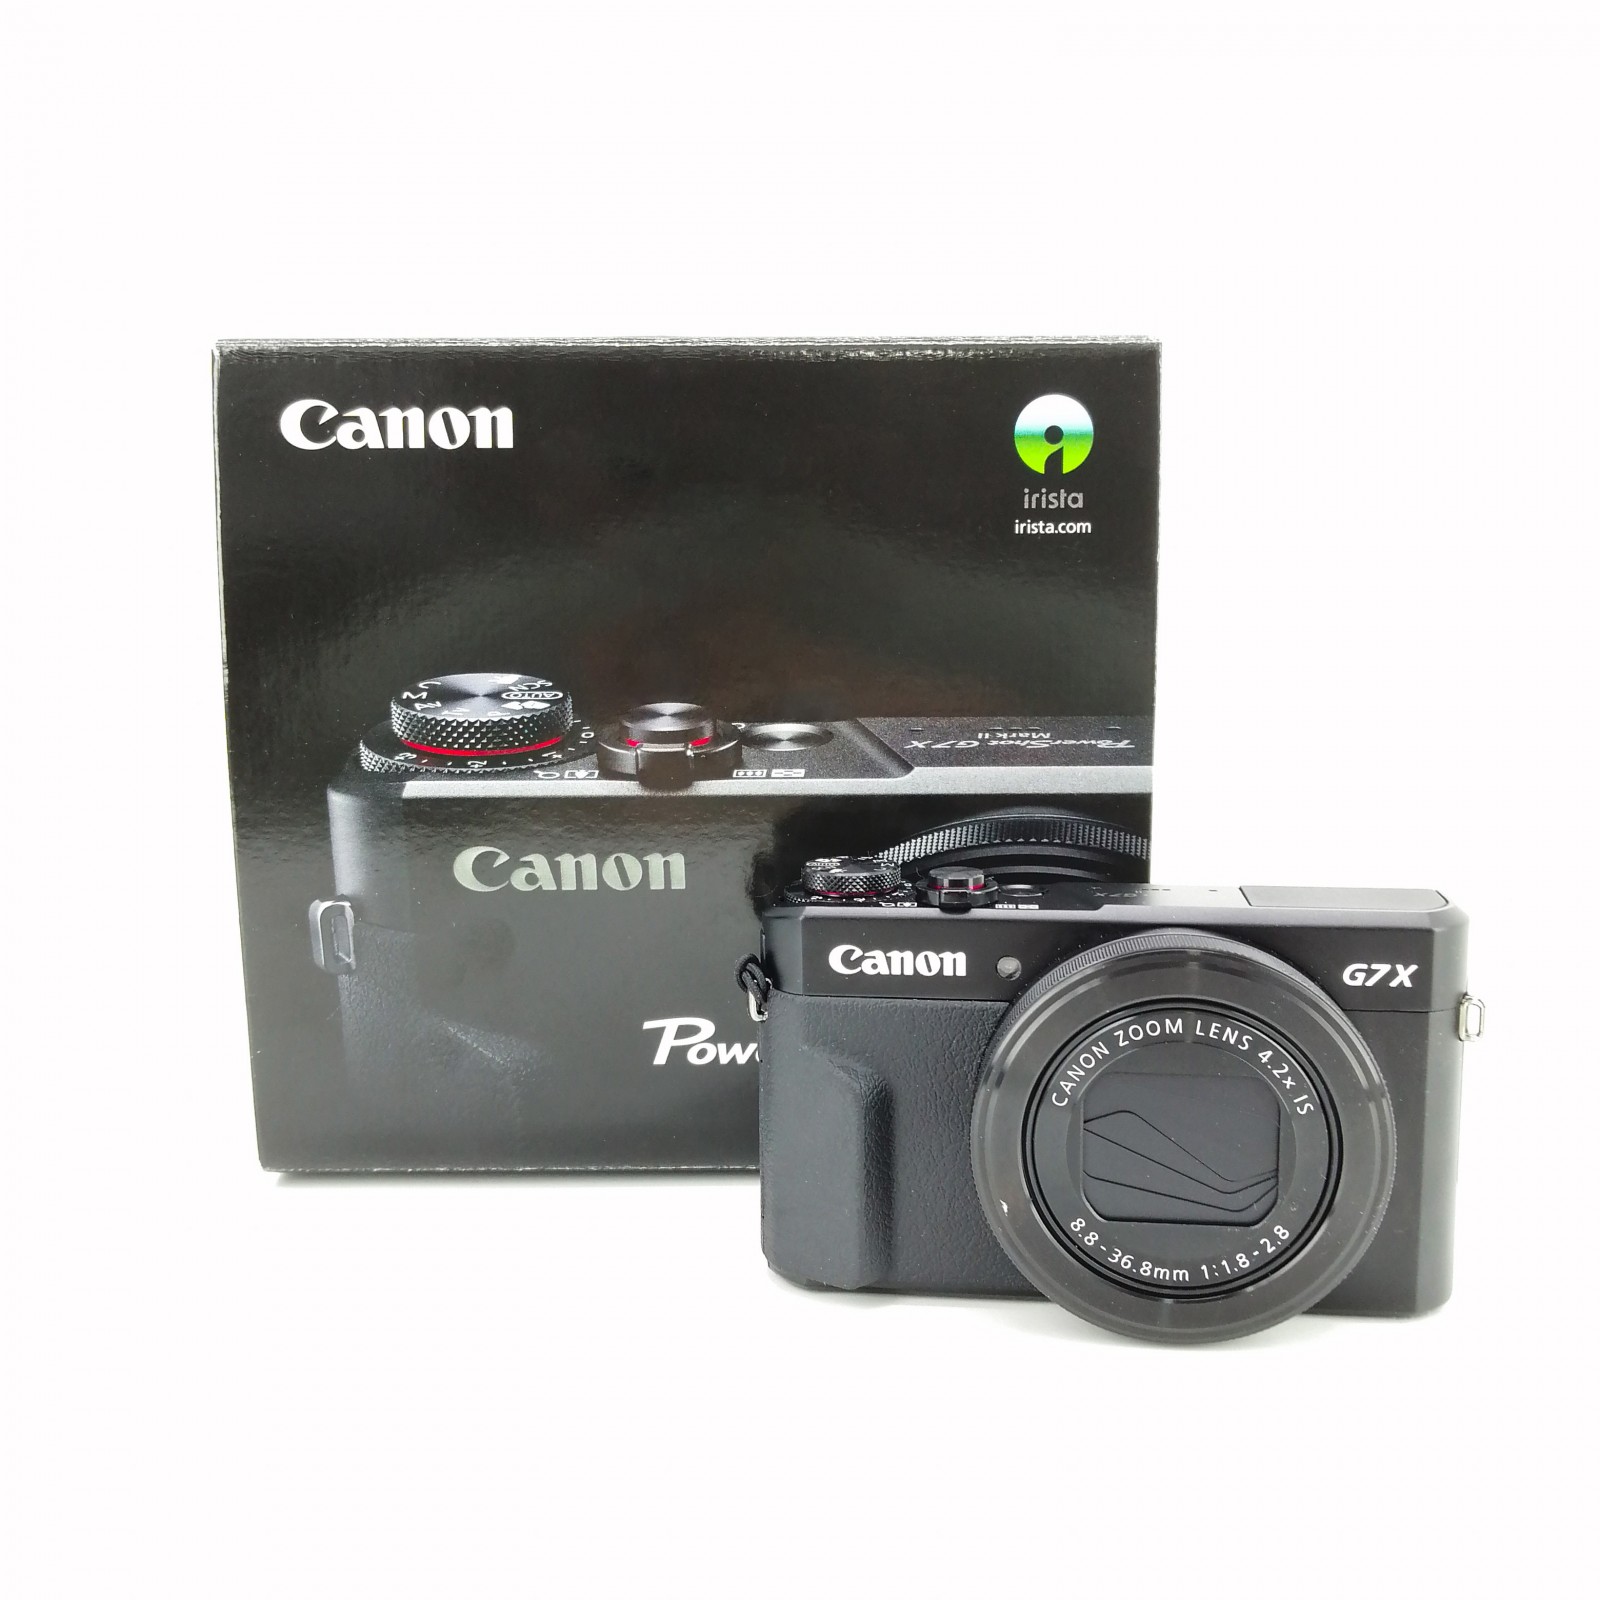 Cámara Canon G7X Mark II